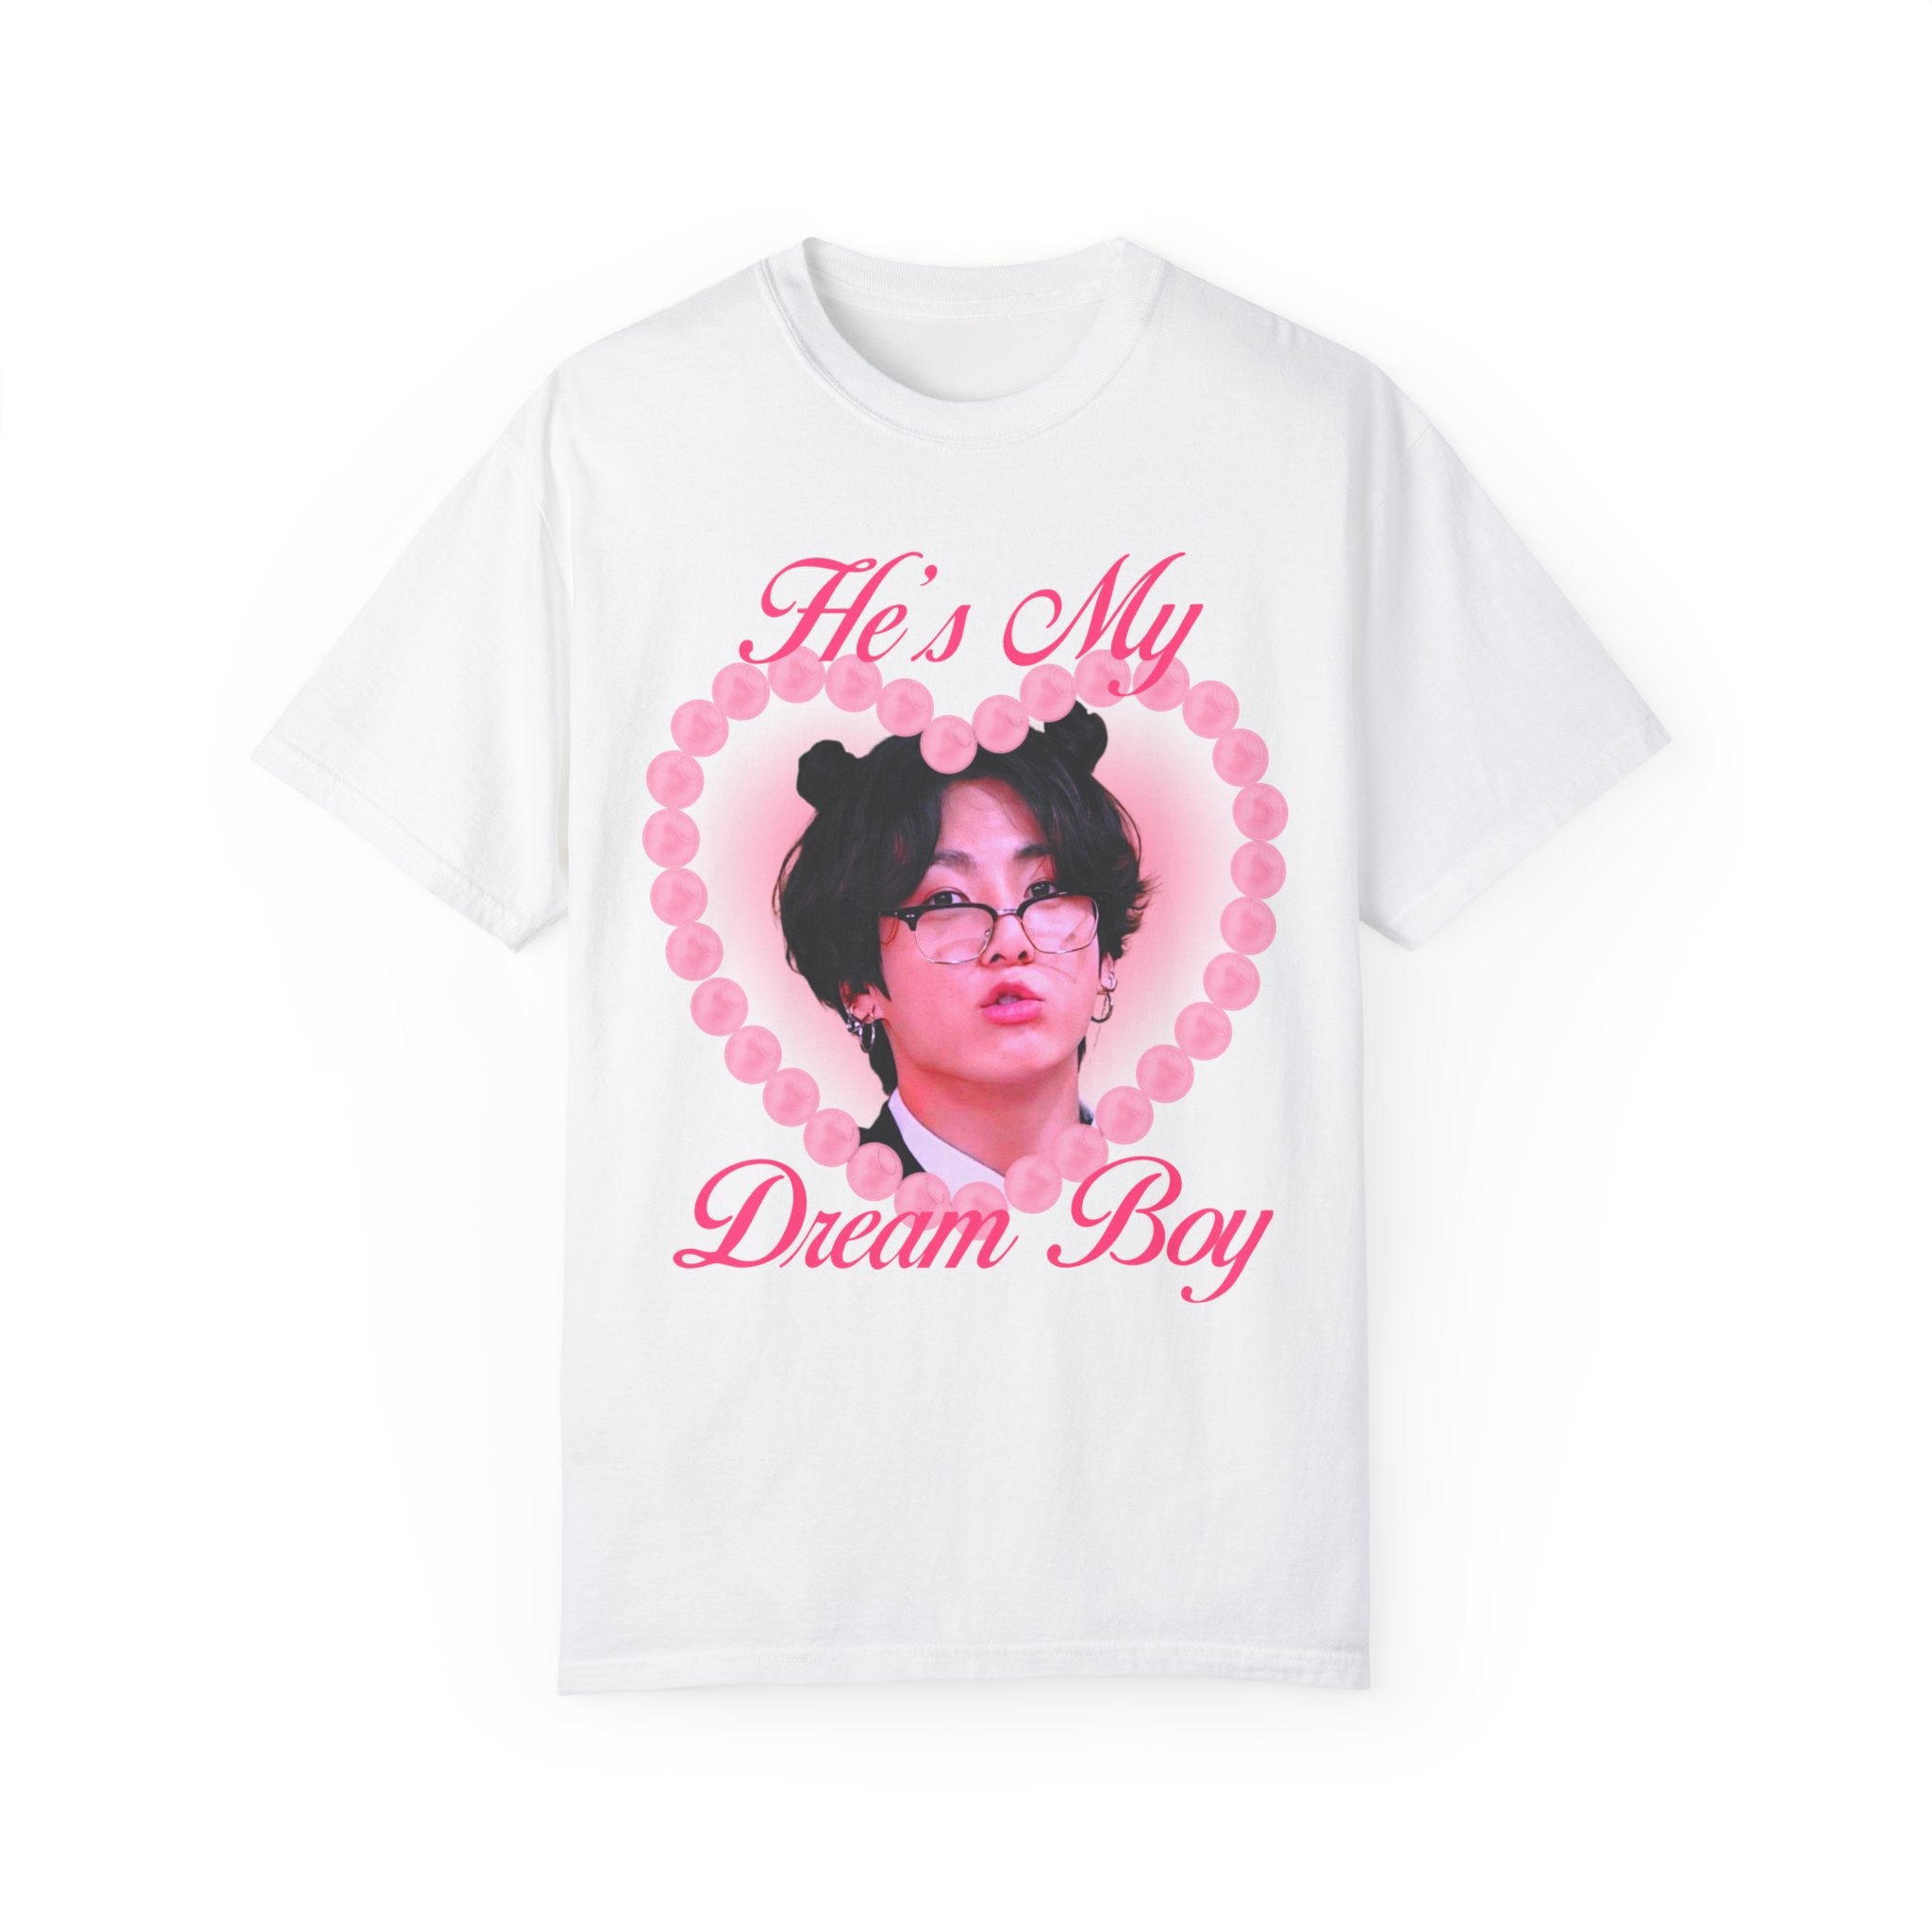 Jungkook Dream Boy Ver 2 Unisex Garment-Dyed T-shirt